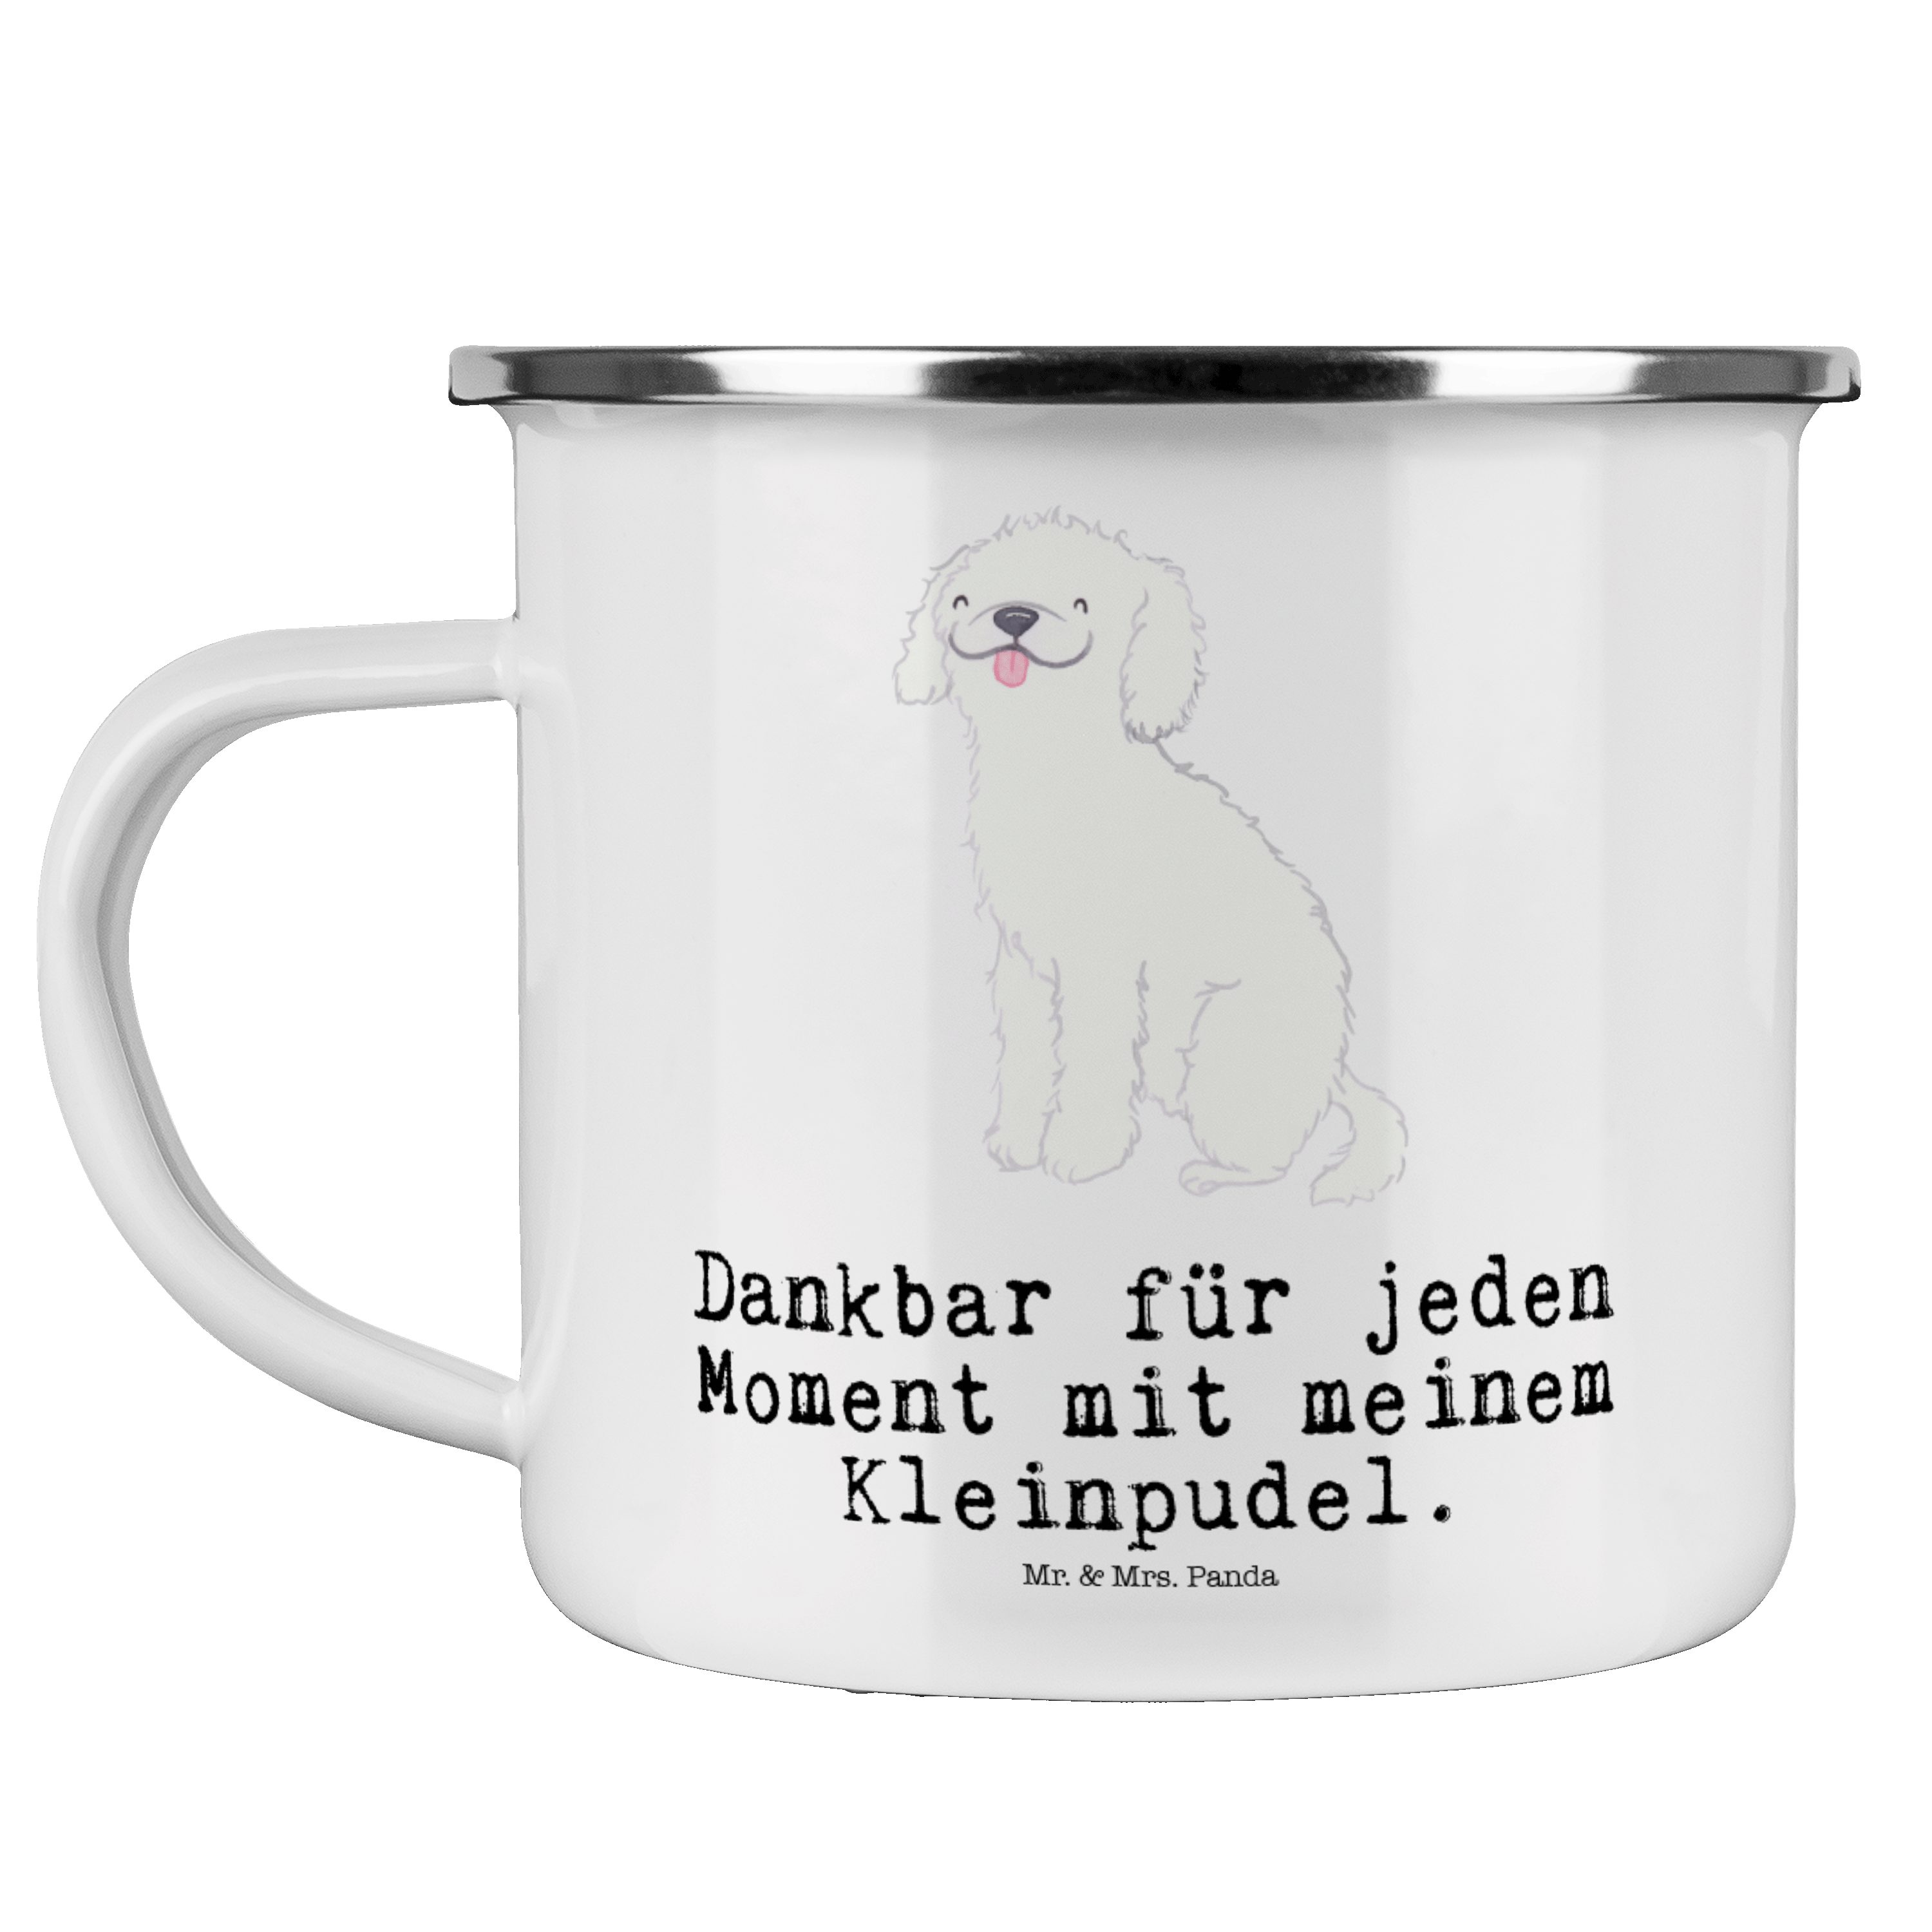 Mr. & Mrs. Kleinpudel - Weiß Emaille Moment Blecht, Becher Kaffee - Panda Metalltasse, Hund, Geschenk